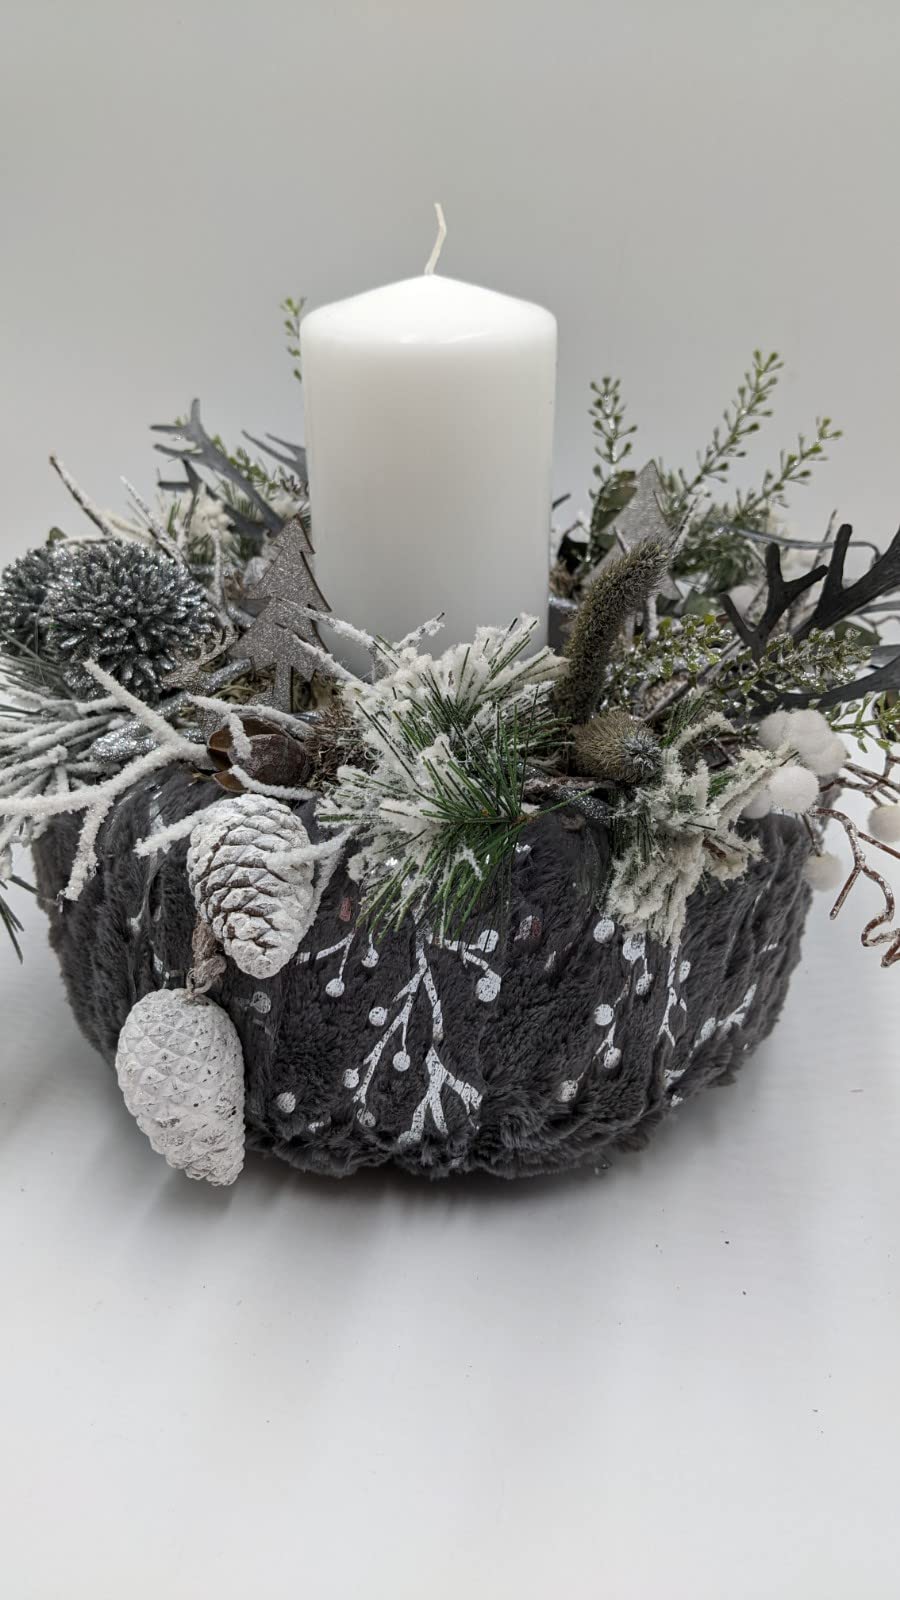 Weihnachtsgesteck Adventskranz Adventsgesteck Zapfen Tannenbäumchen Allium Tanne grau silber weiß